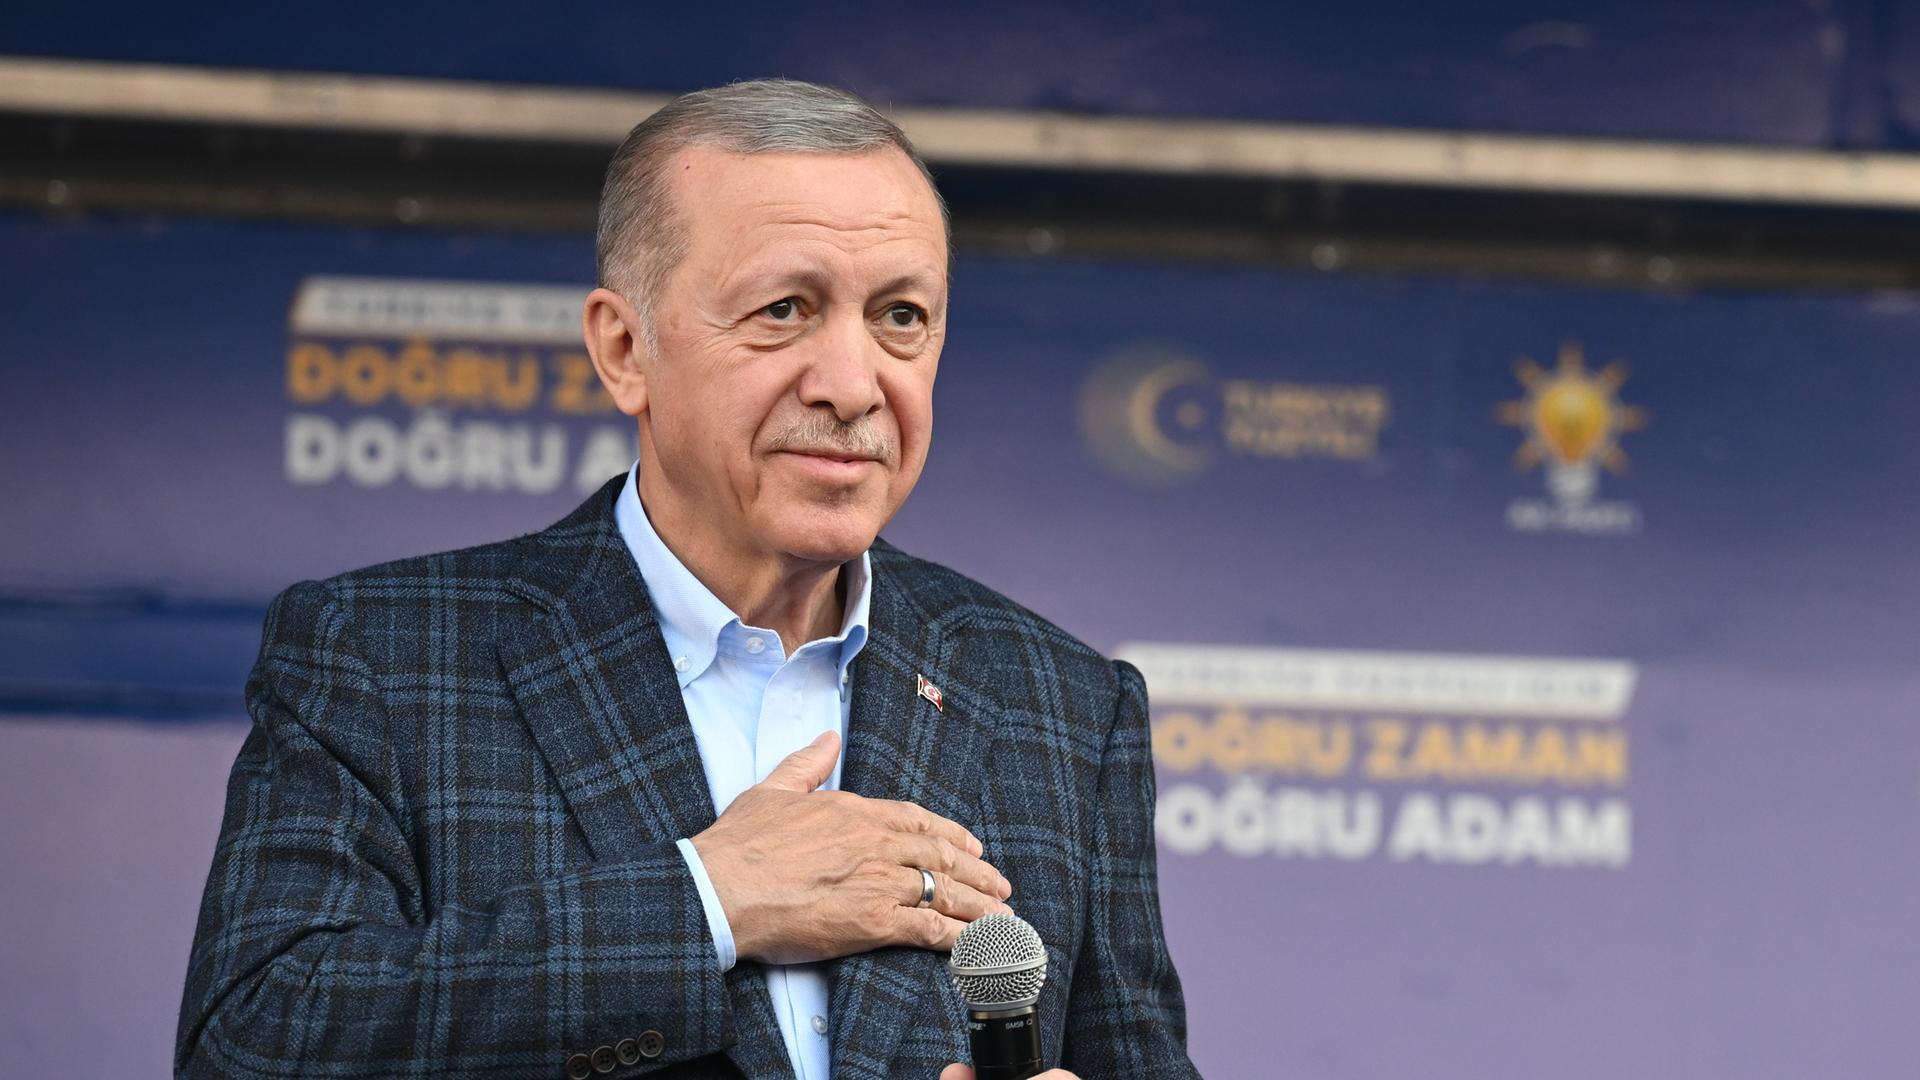 Porträtbild des türkischen Präsidenten Recep Tayyip Erdogan. Er steht mit einem Mikrofon in der Hand auf einer Bühne und hat seine rechte Hand auf seine Herzgegend gelegt. 